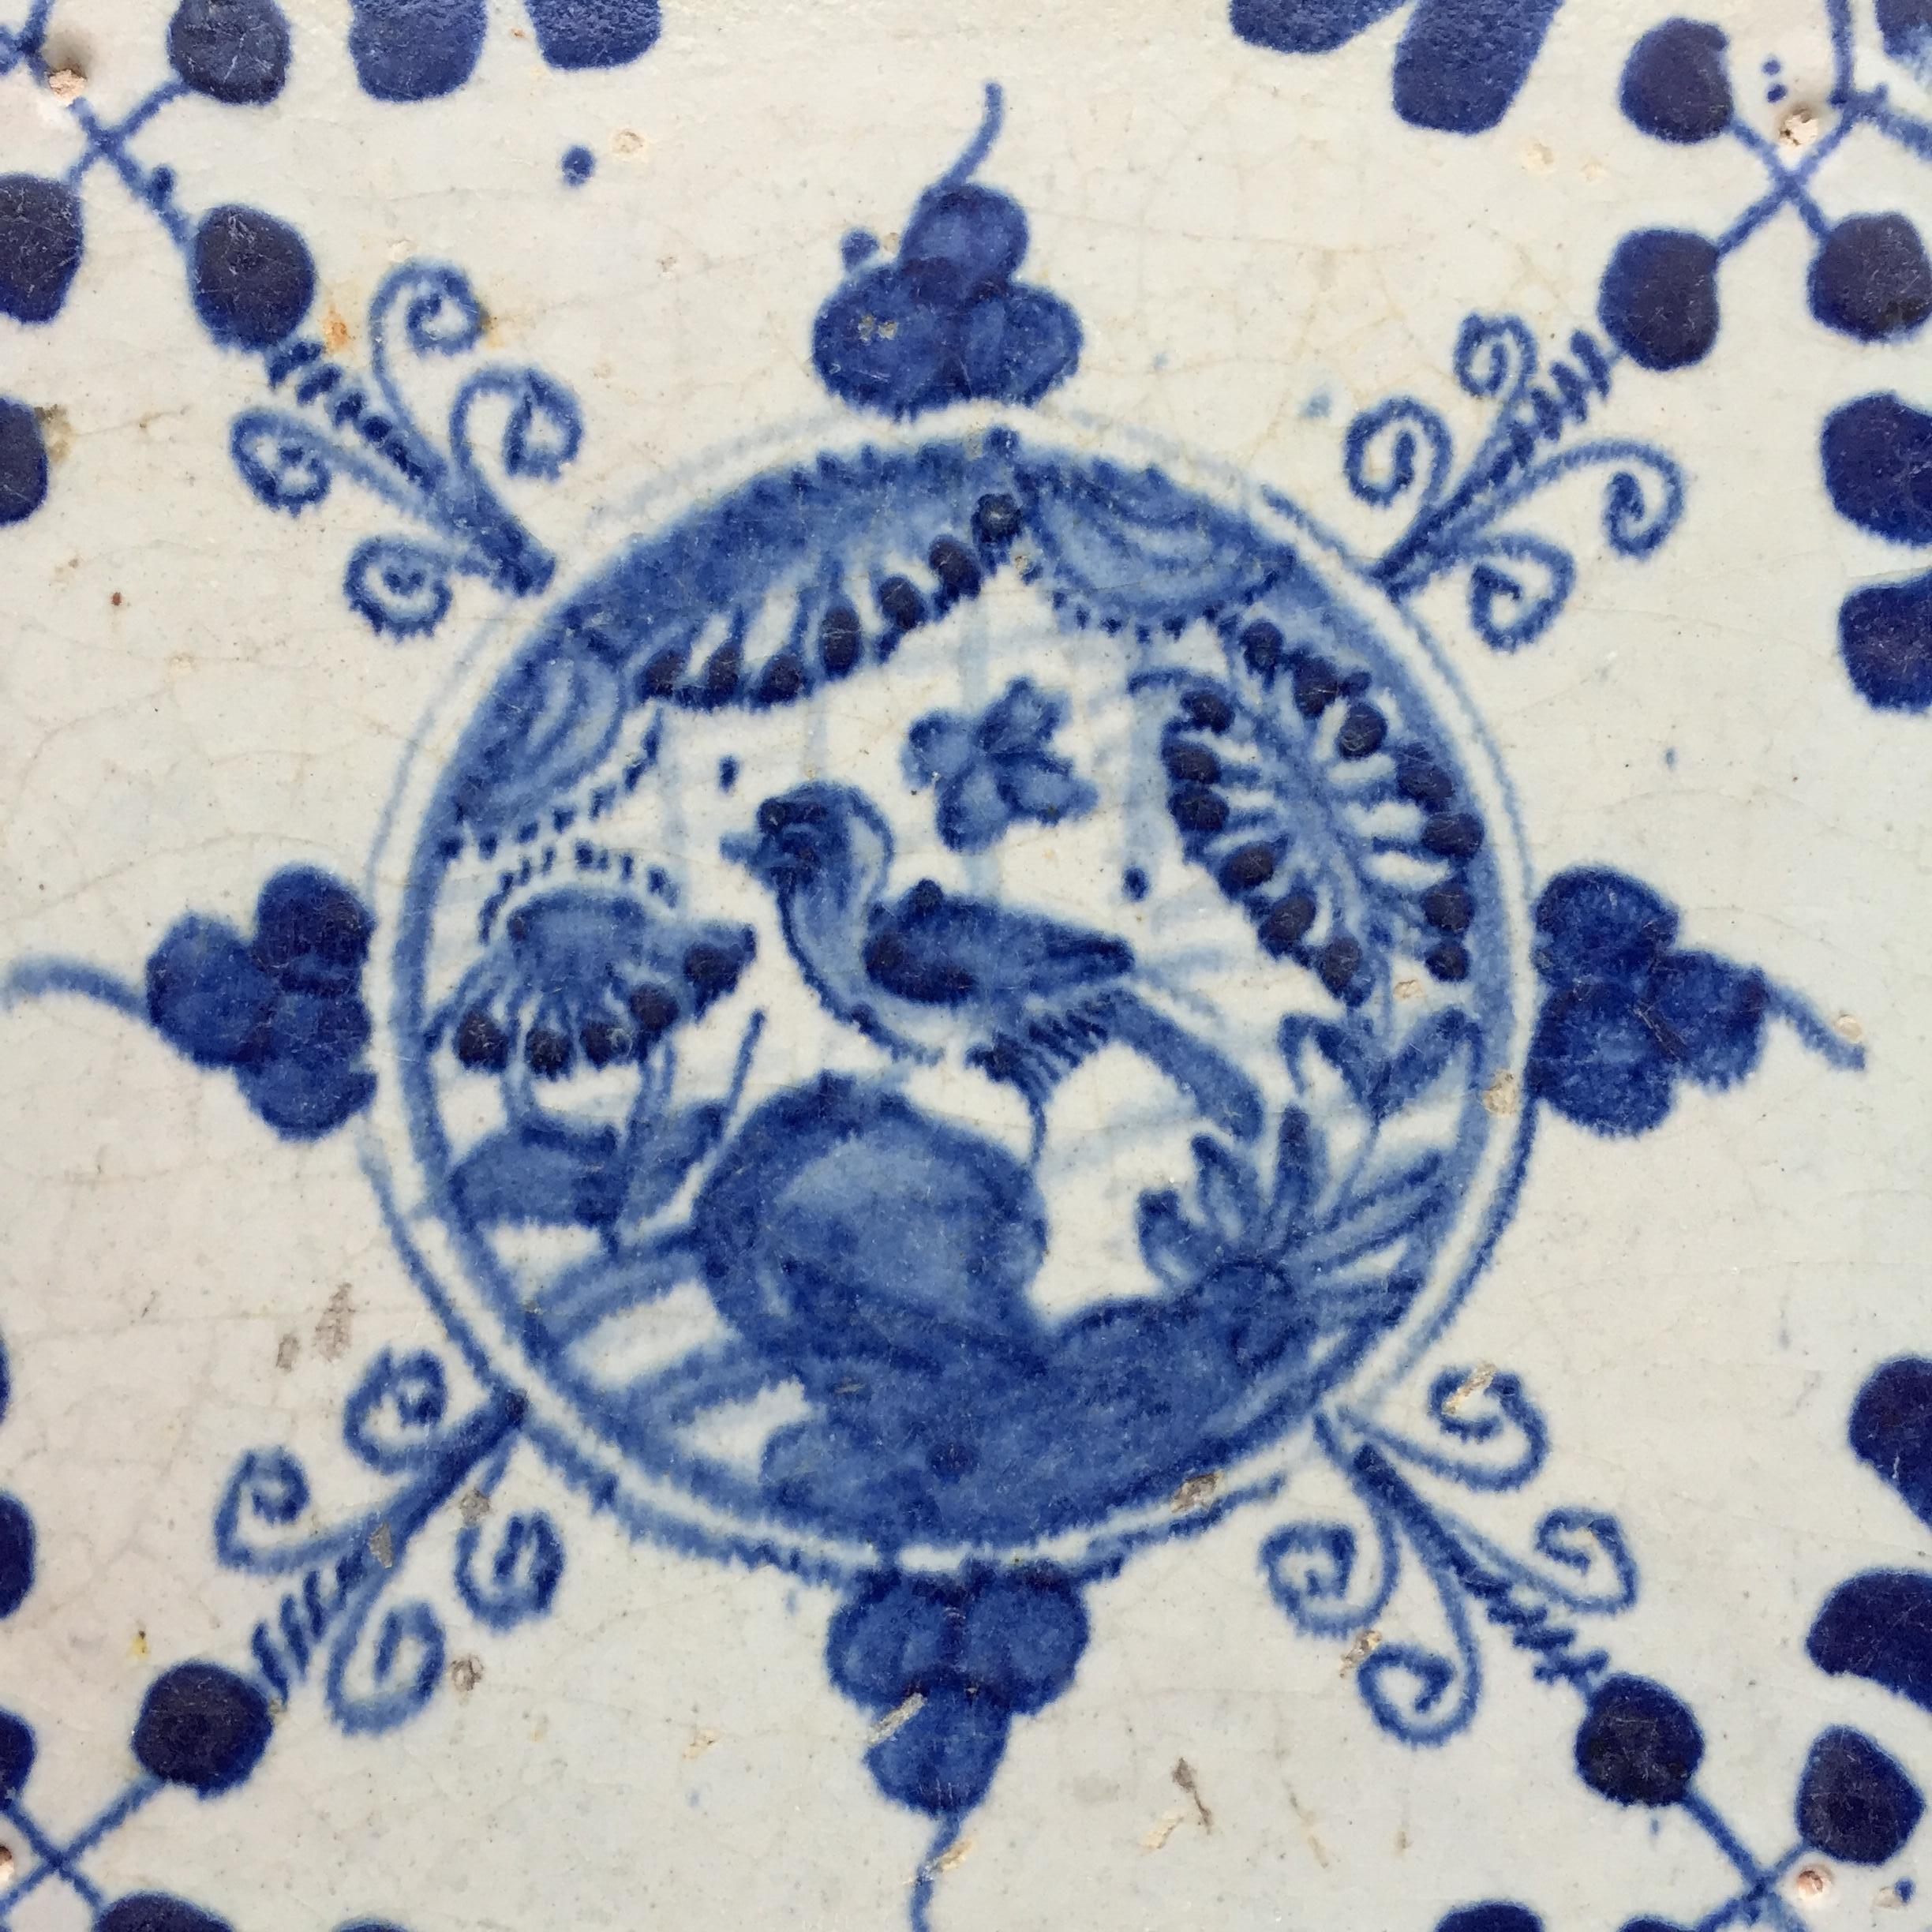 Les Pays-Bas
Vers 1620 - 1640

Carreau hollandais bleu et blanc à décor d'un jardin chinois avec un oiseau sur un rocher. Influencée par la porcelaine chinoise de la période Wanli.
Peint en cercle avec des feuilles et des boucles autour du cercle.